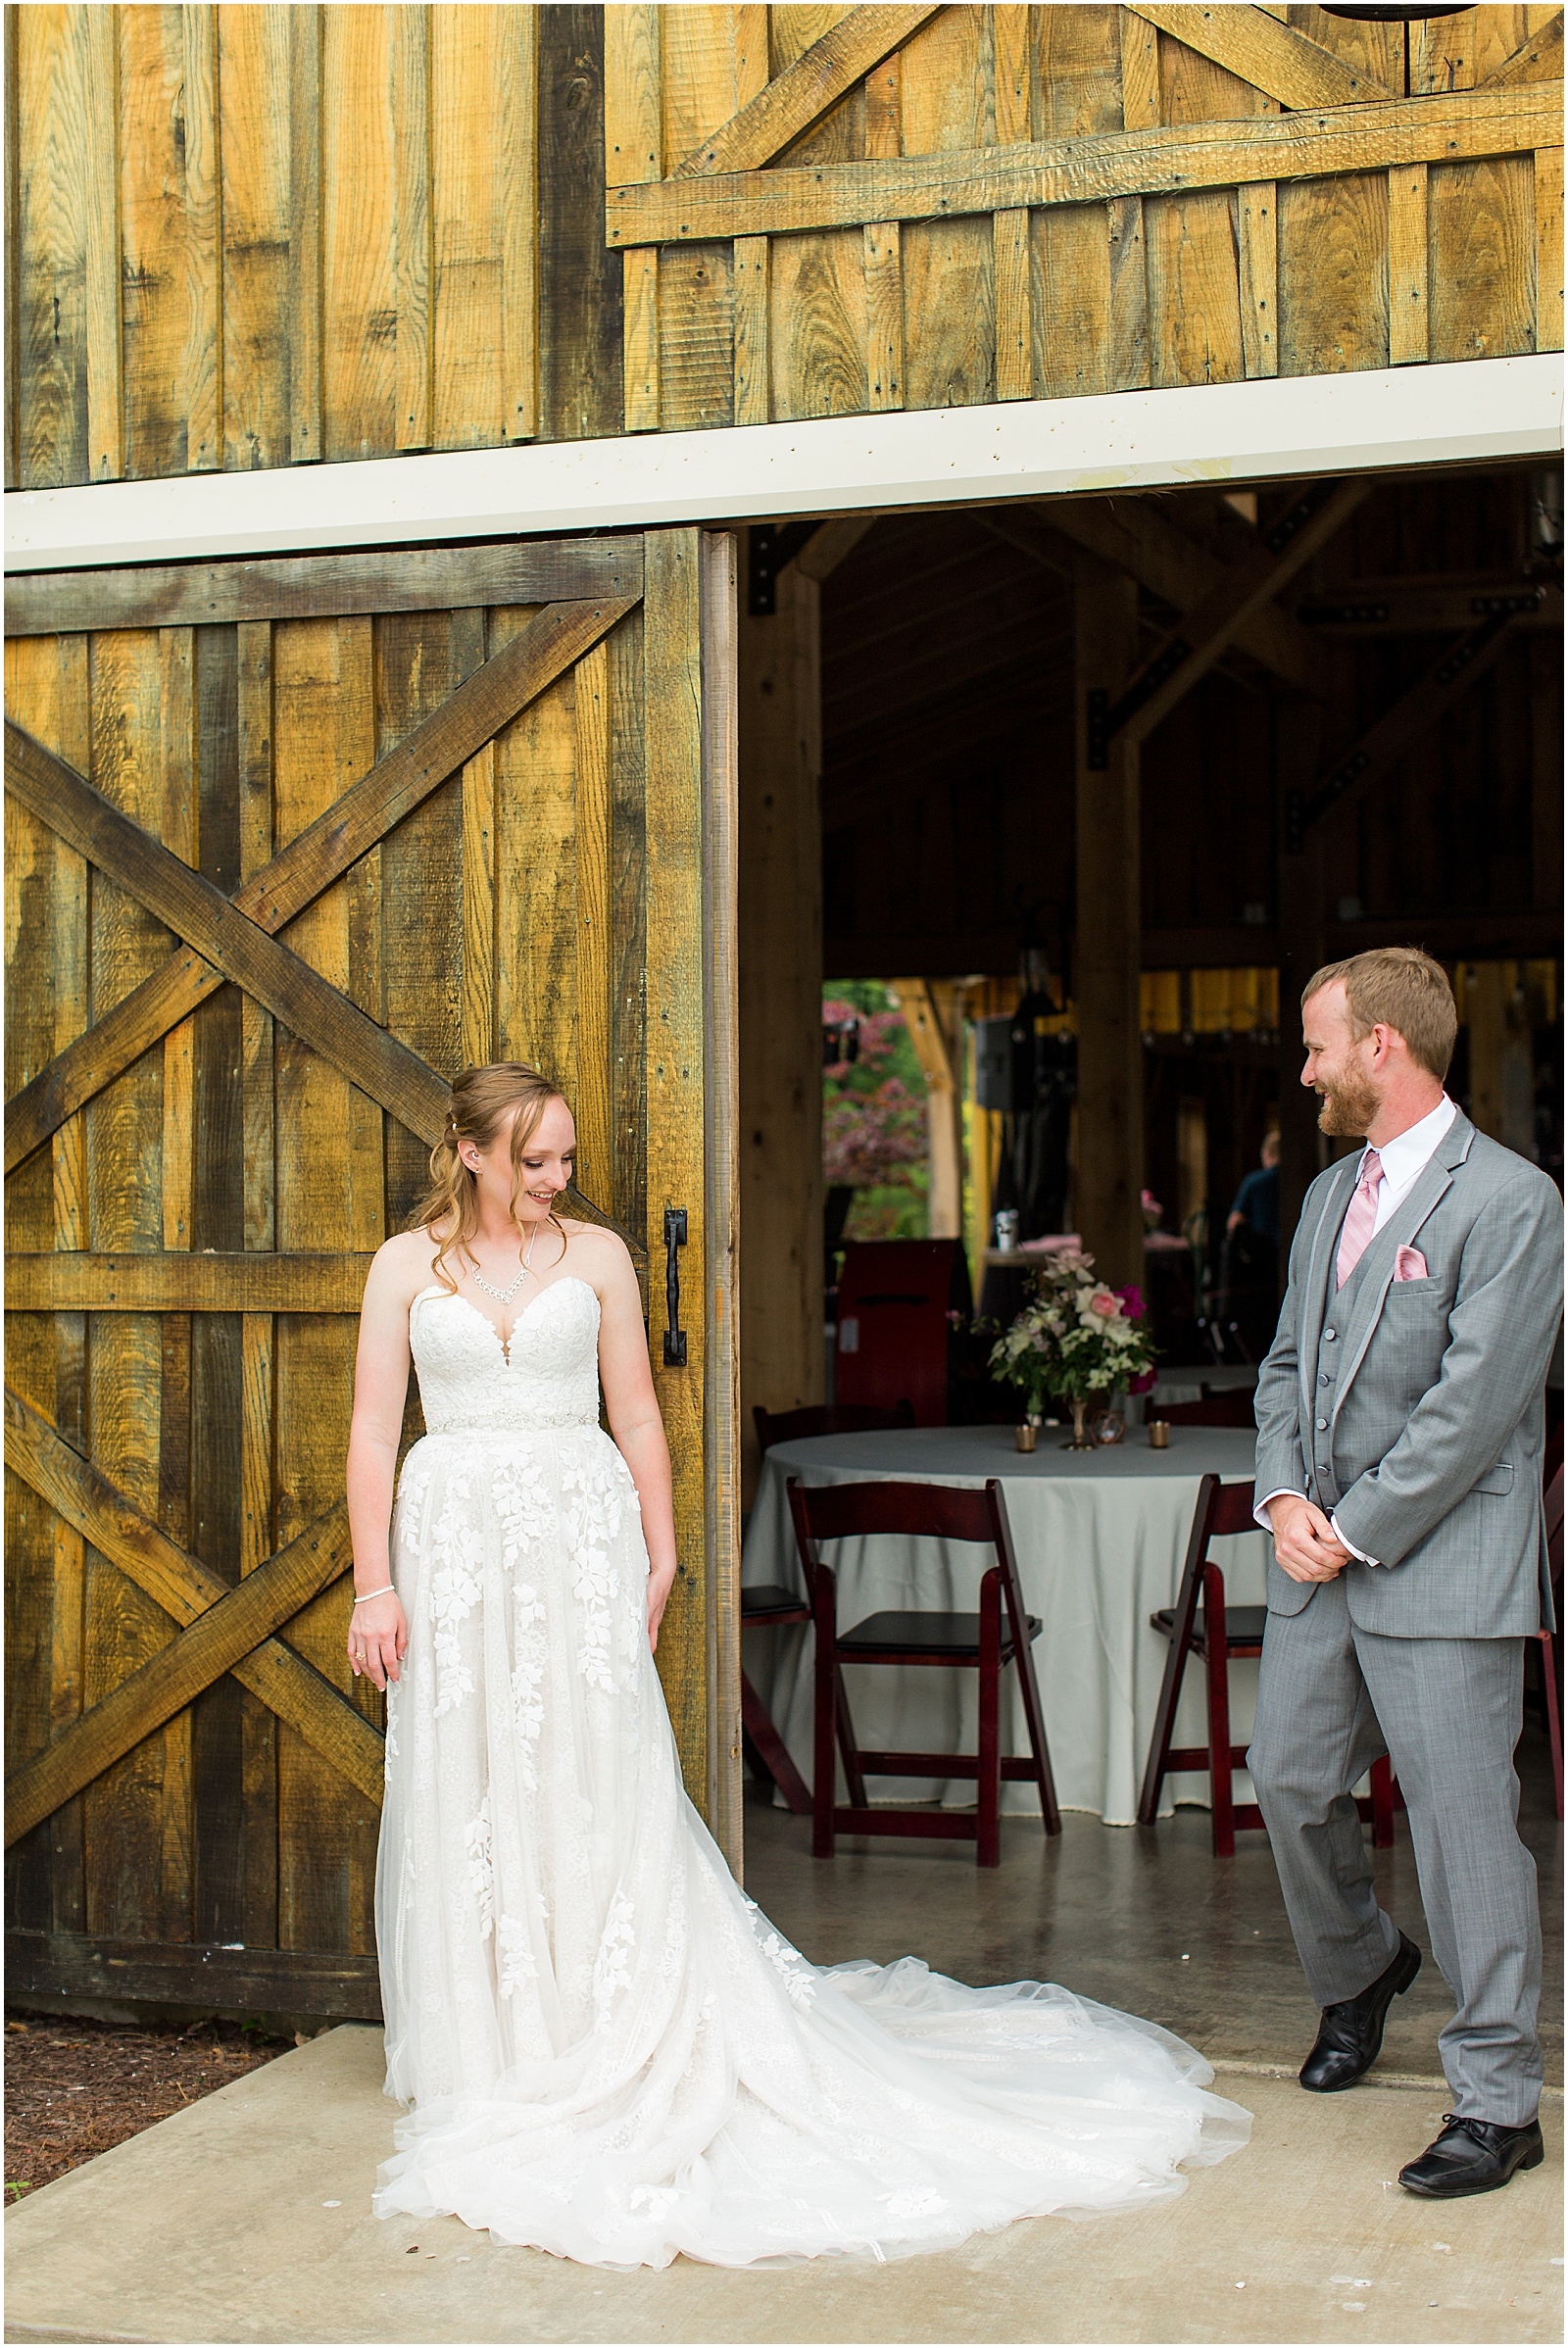 Sierra and Eddie | Wedding BlogBret and Brandie Blog | @bretandbrandie-0050.jpg